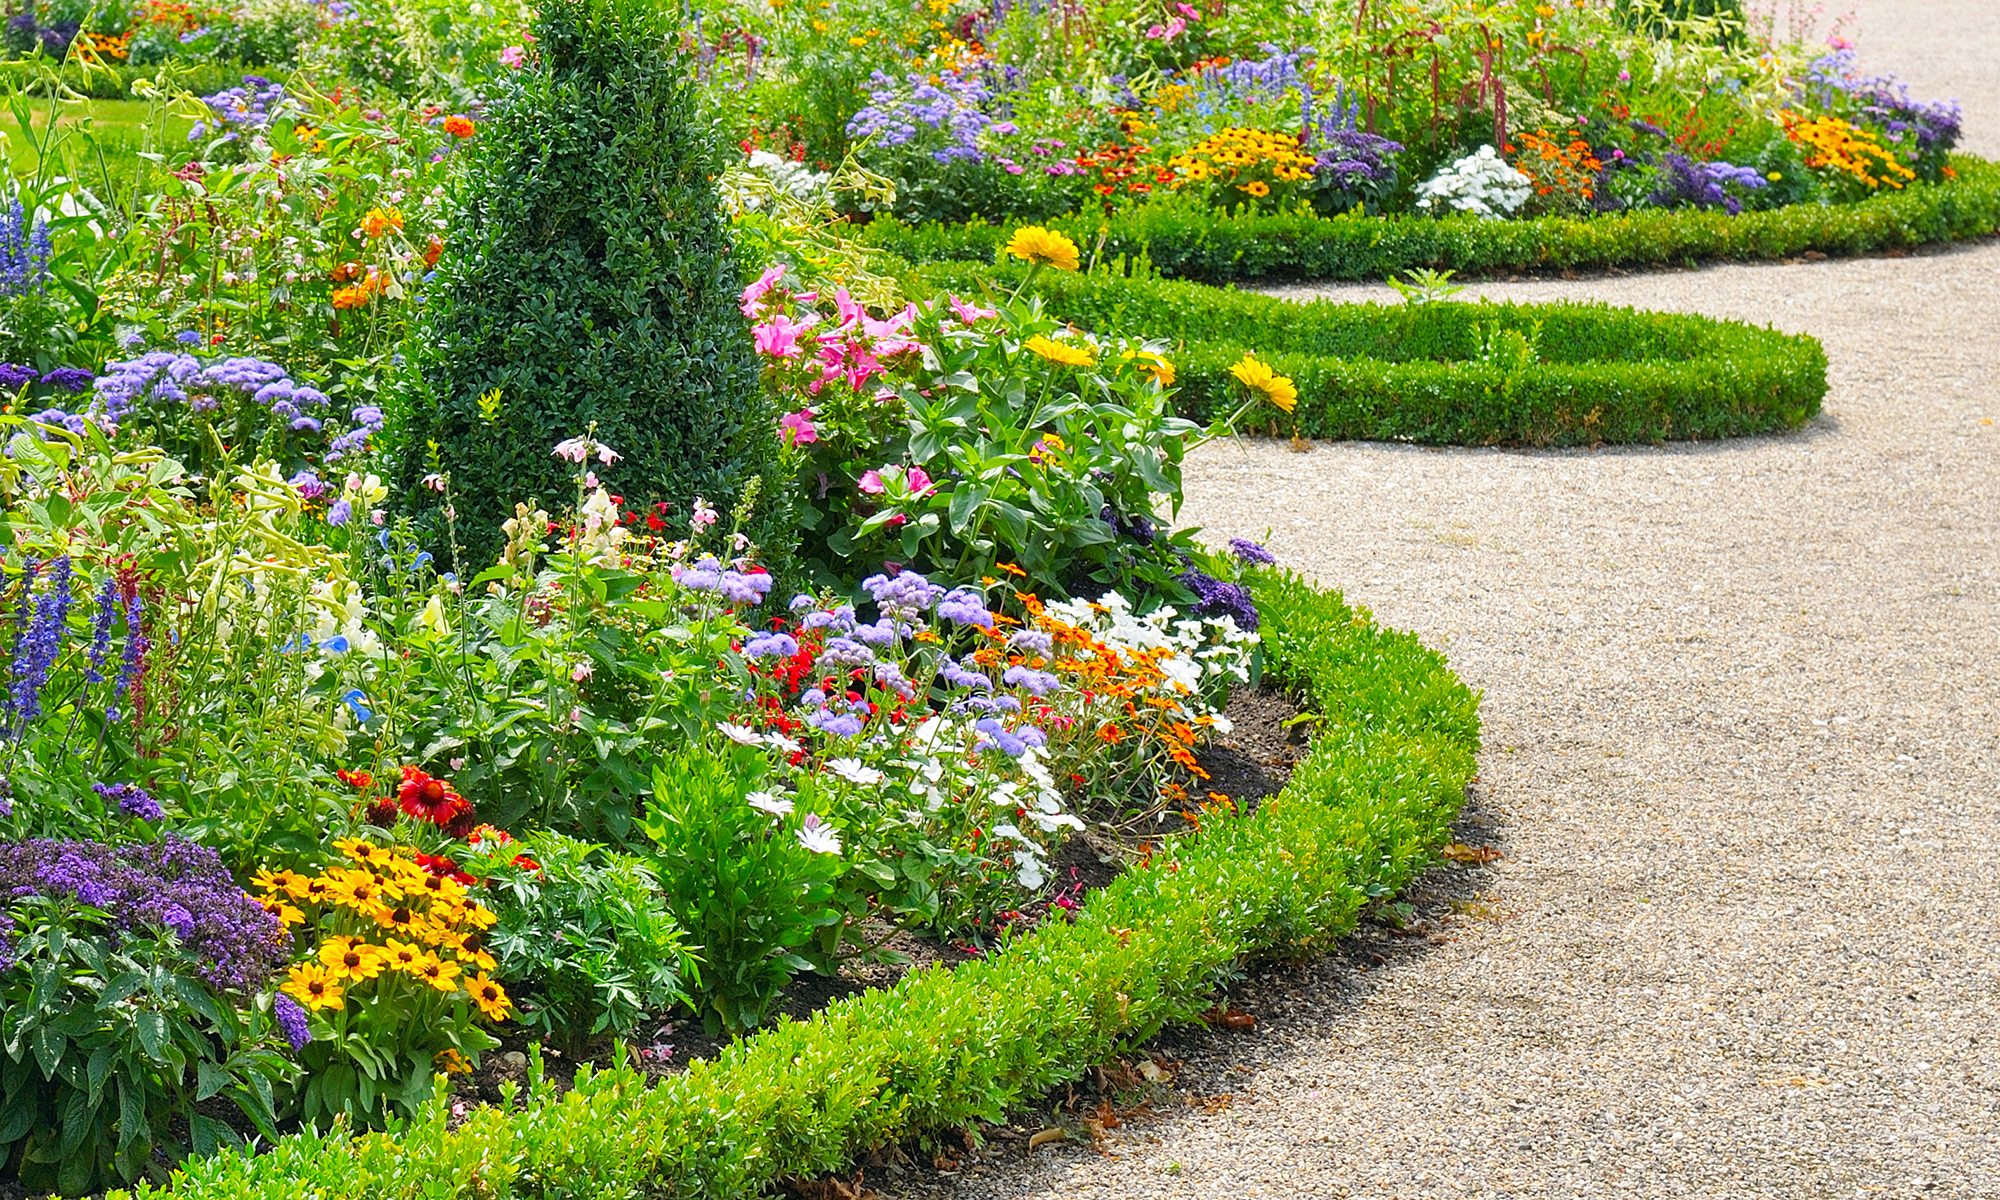 Die Dunaway Gärten sind einer der größten natürlichen Felsen- und Blumengärten des amerikanischen Südens